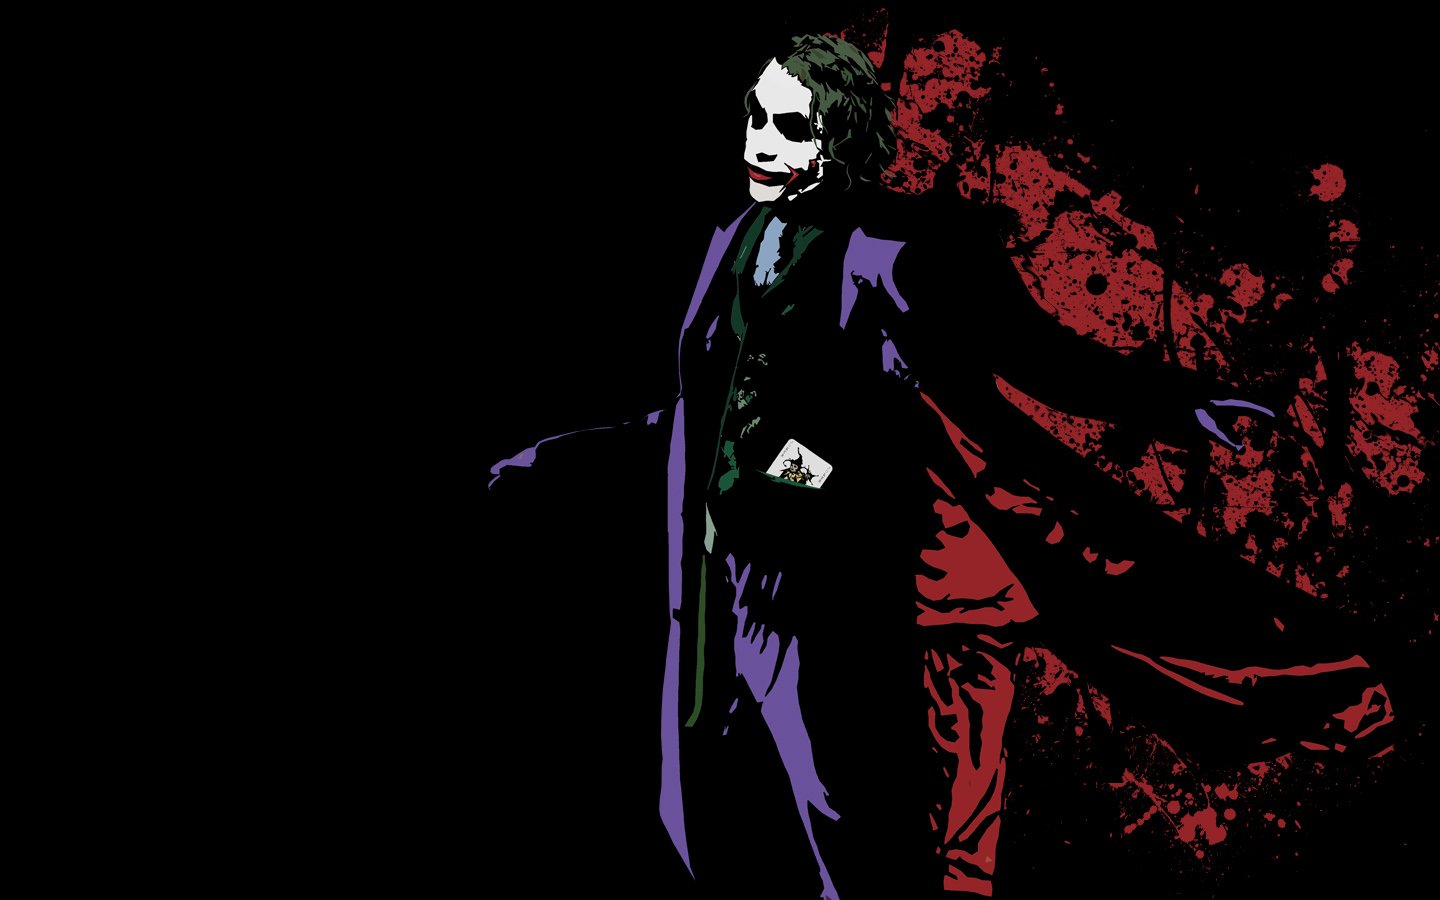 joker hd wallpaper,erfundener charakter,superschurke,joker,batman,illustration